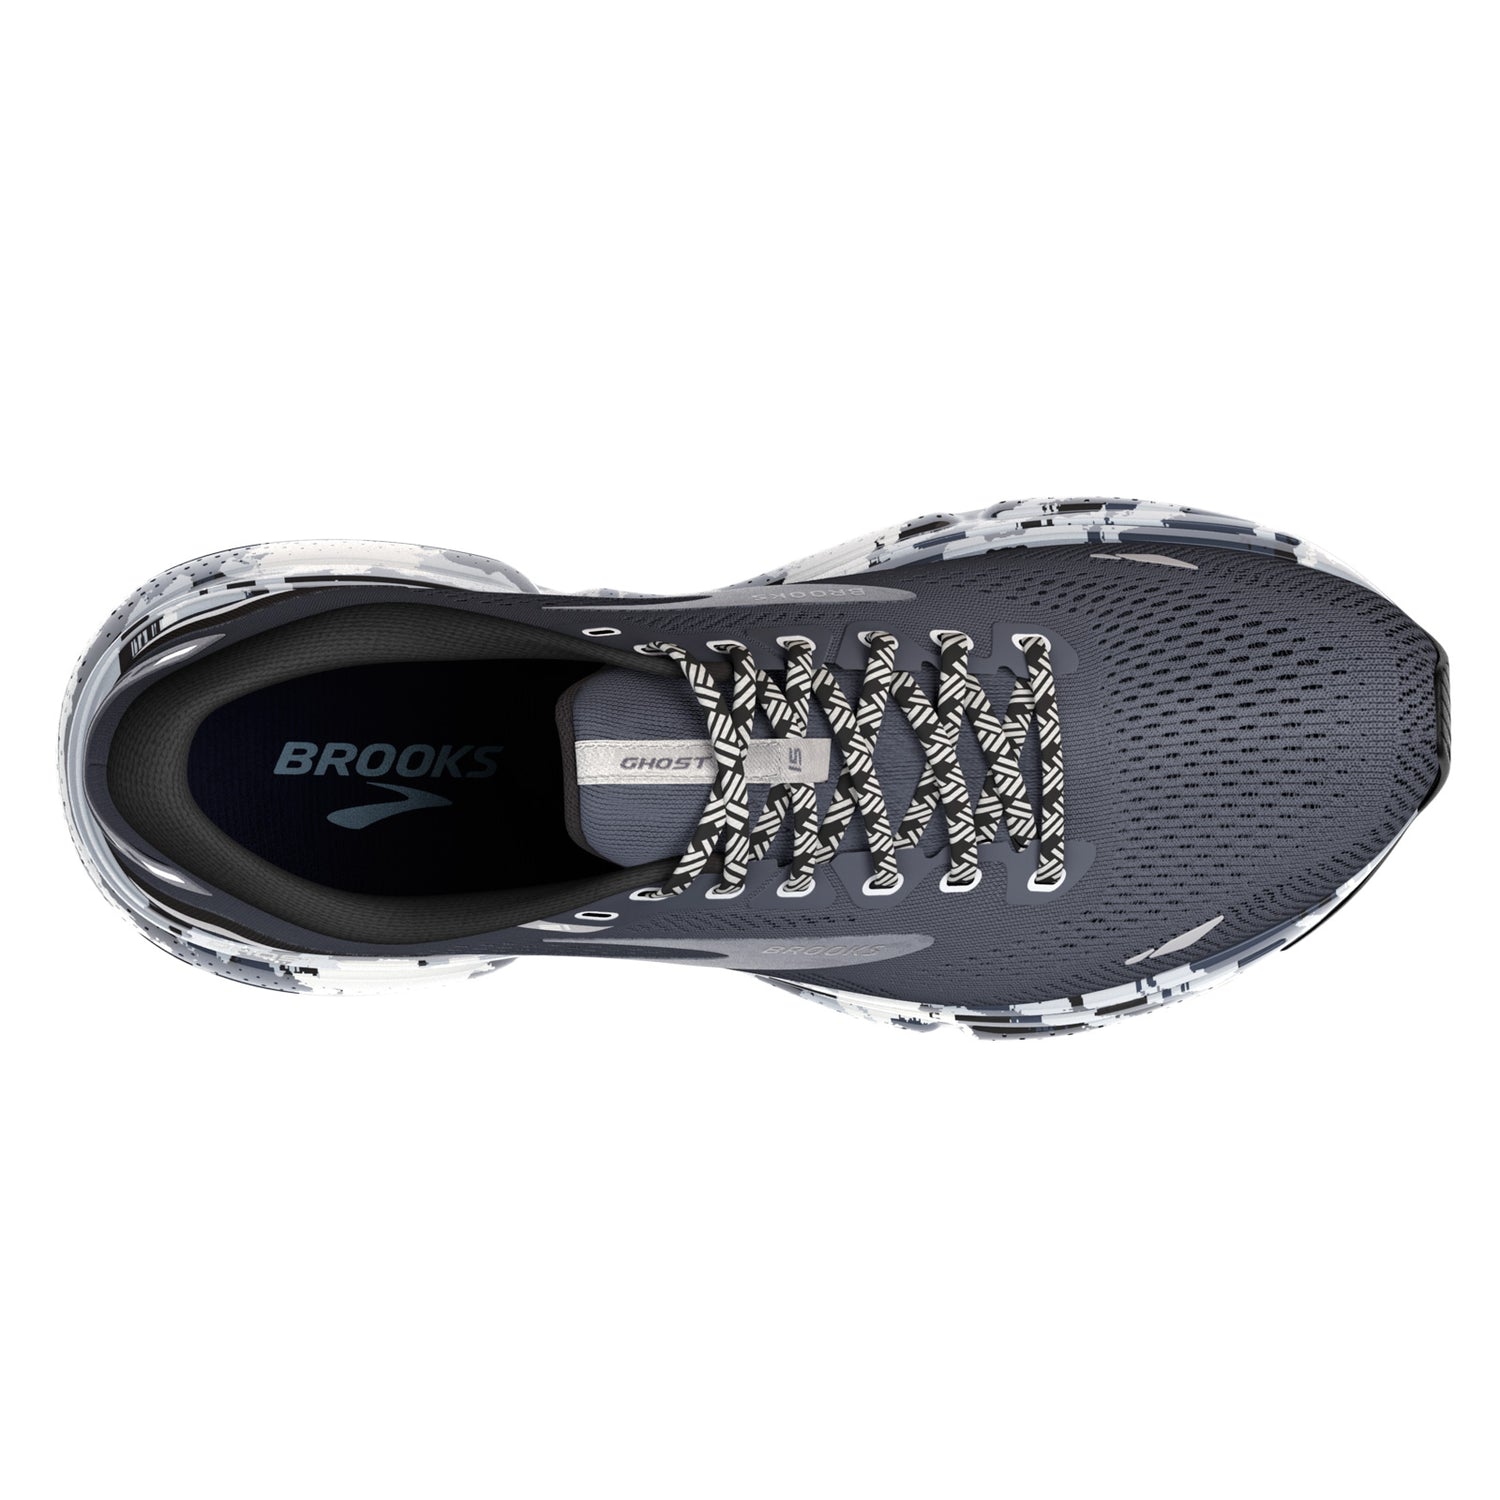 Peltz Shoes  Women's Brooks Ghost 15 Running Shoe Ebony/Black/Oyster 120380 1B 004